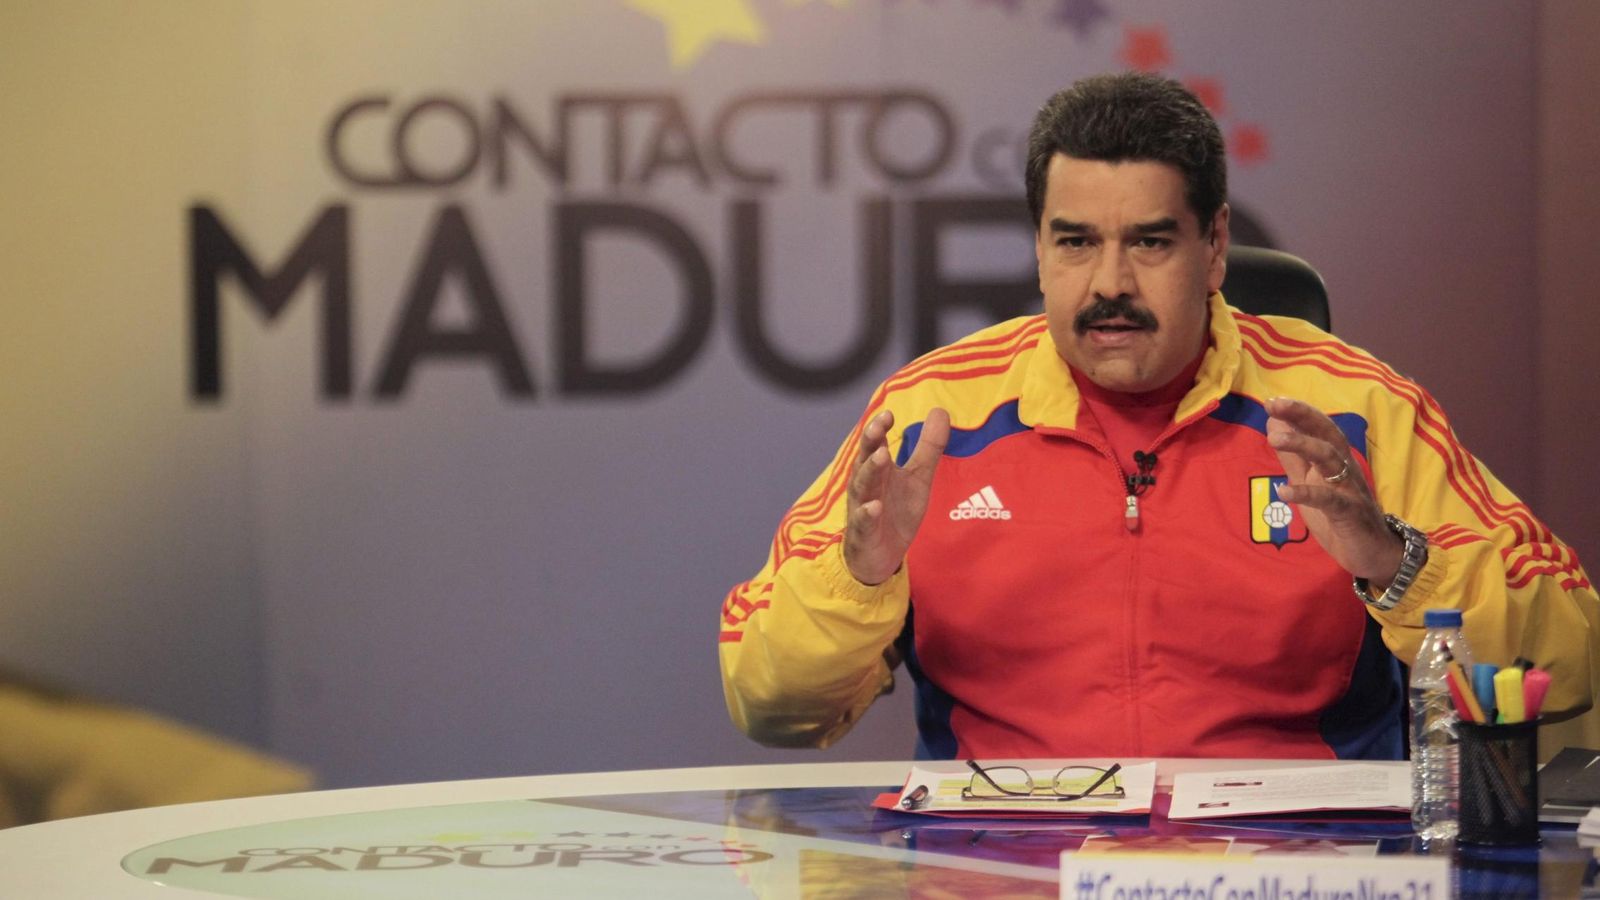 Foto: Nicolás Maduro, durante la intervención televisiva que lleva su nombre (Reuters)